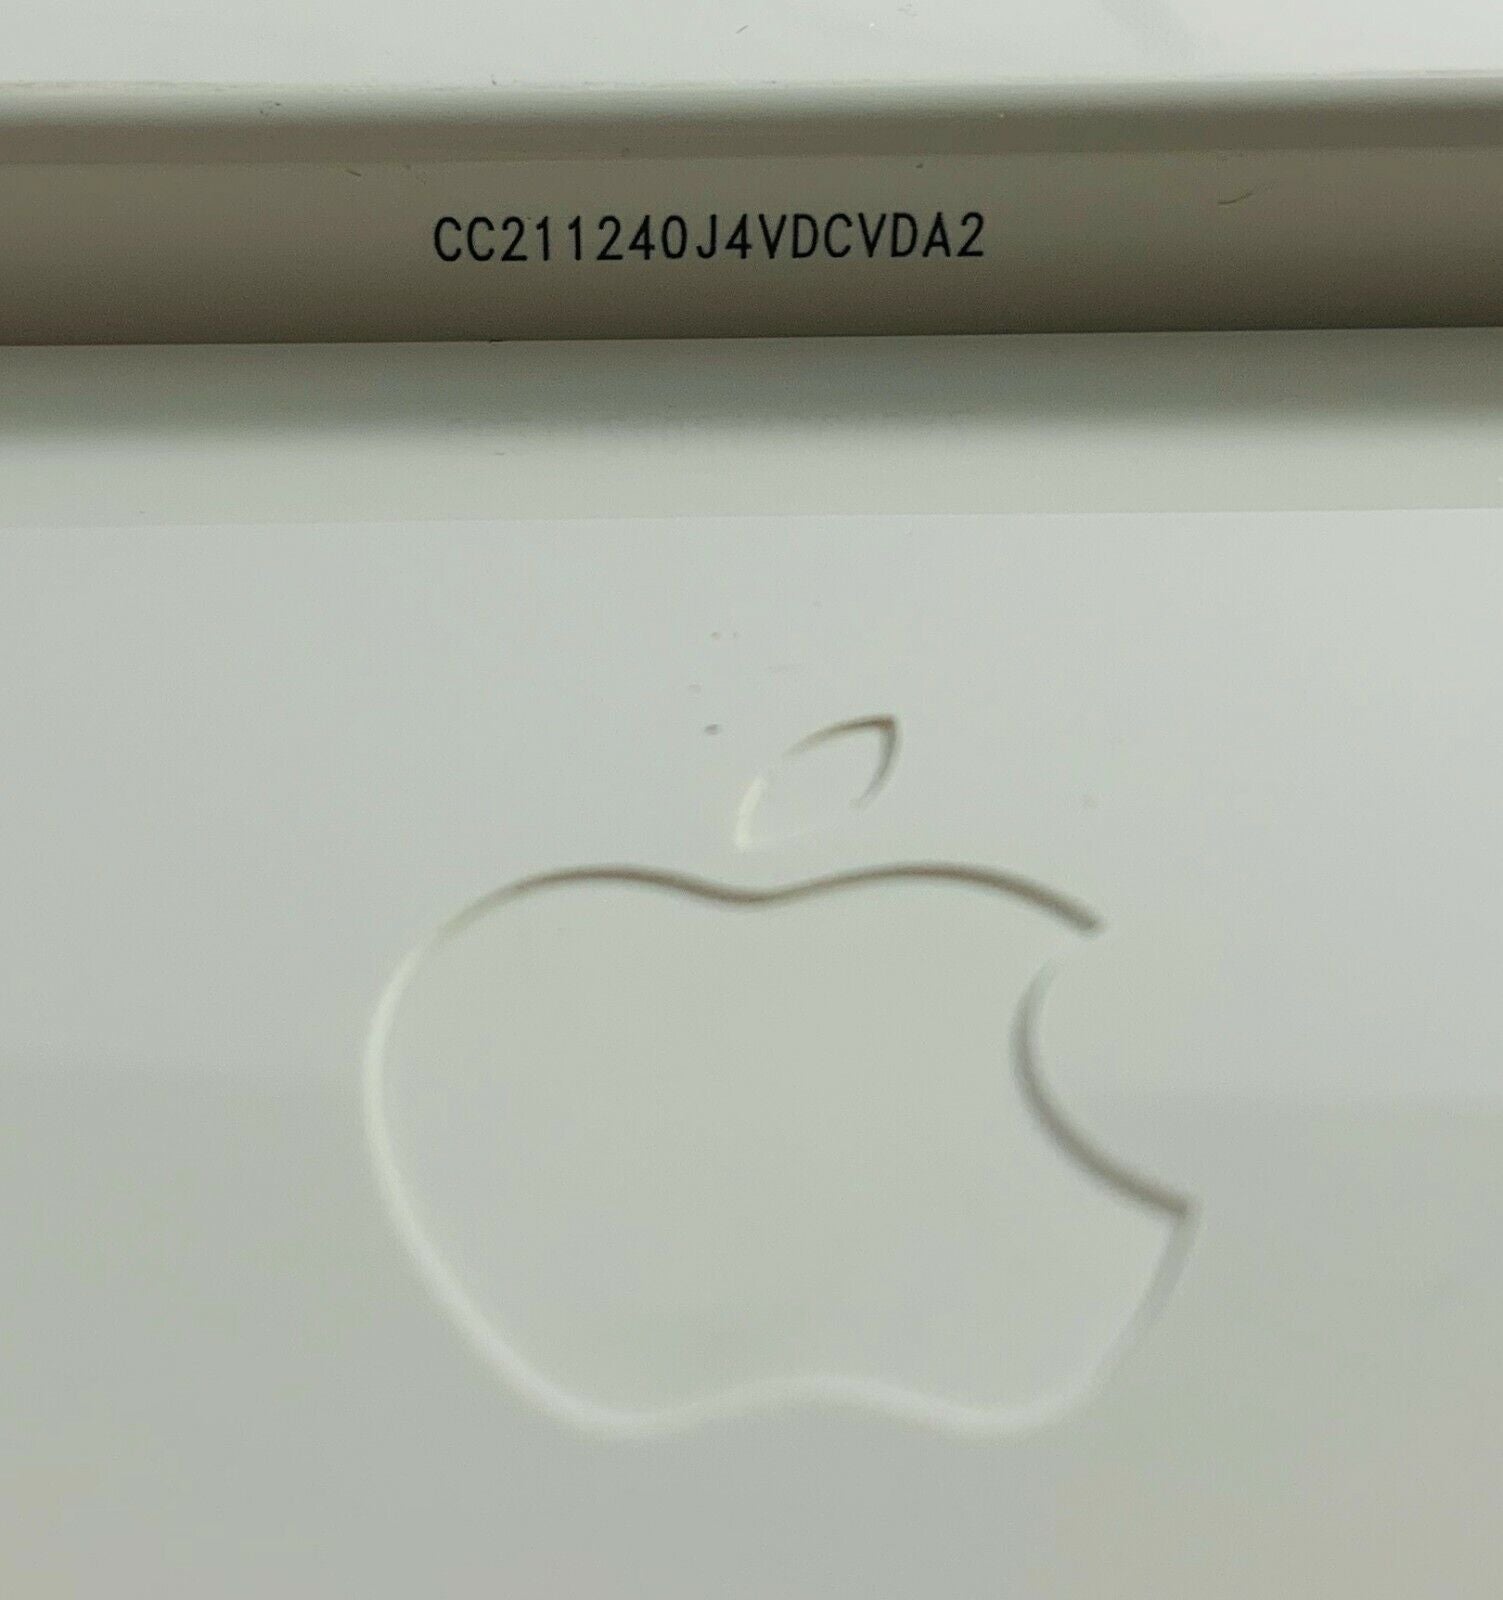 Real  Apple Wired Aluminum USB Keyboard - A1243 MB110LL/A Slim iMac Mac Mini